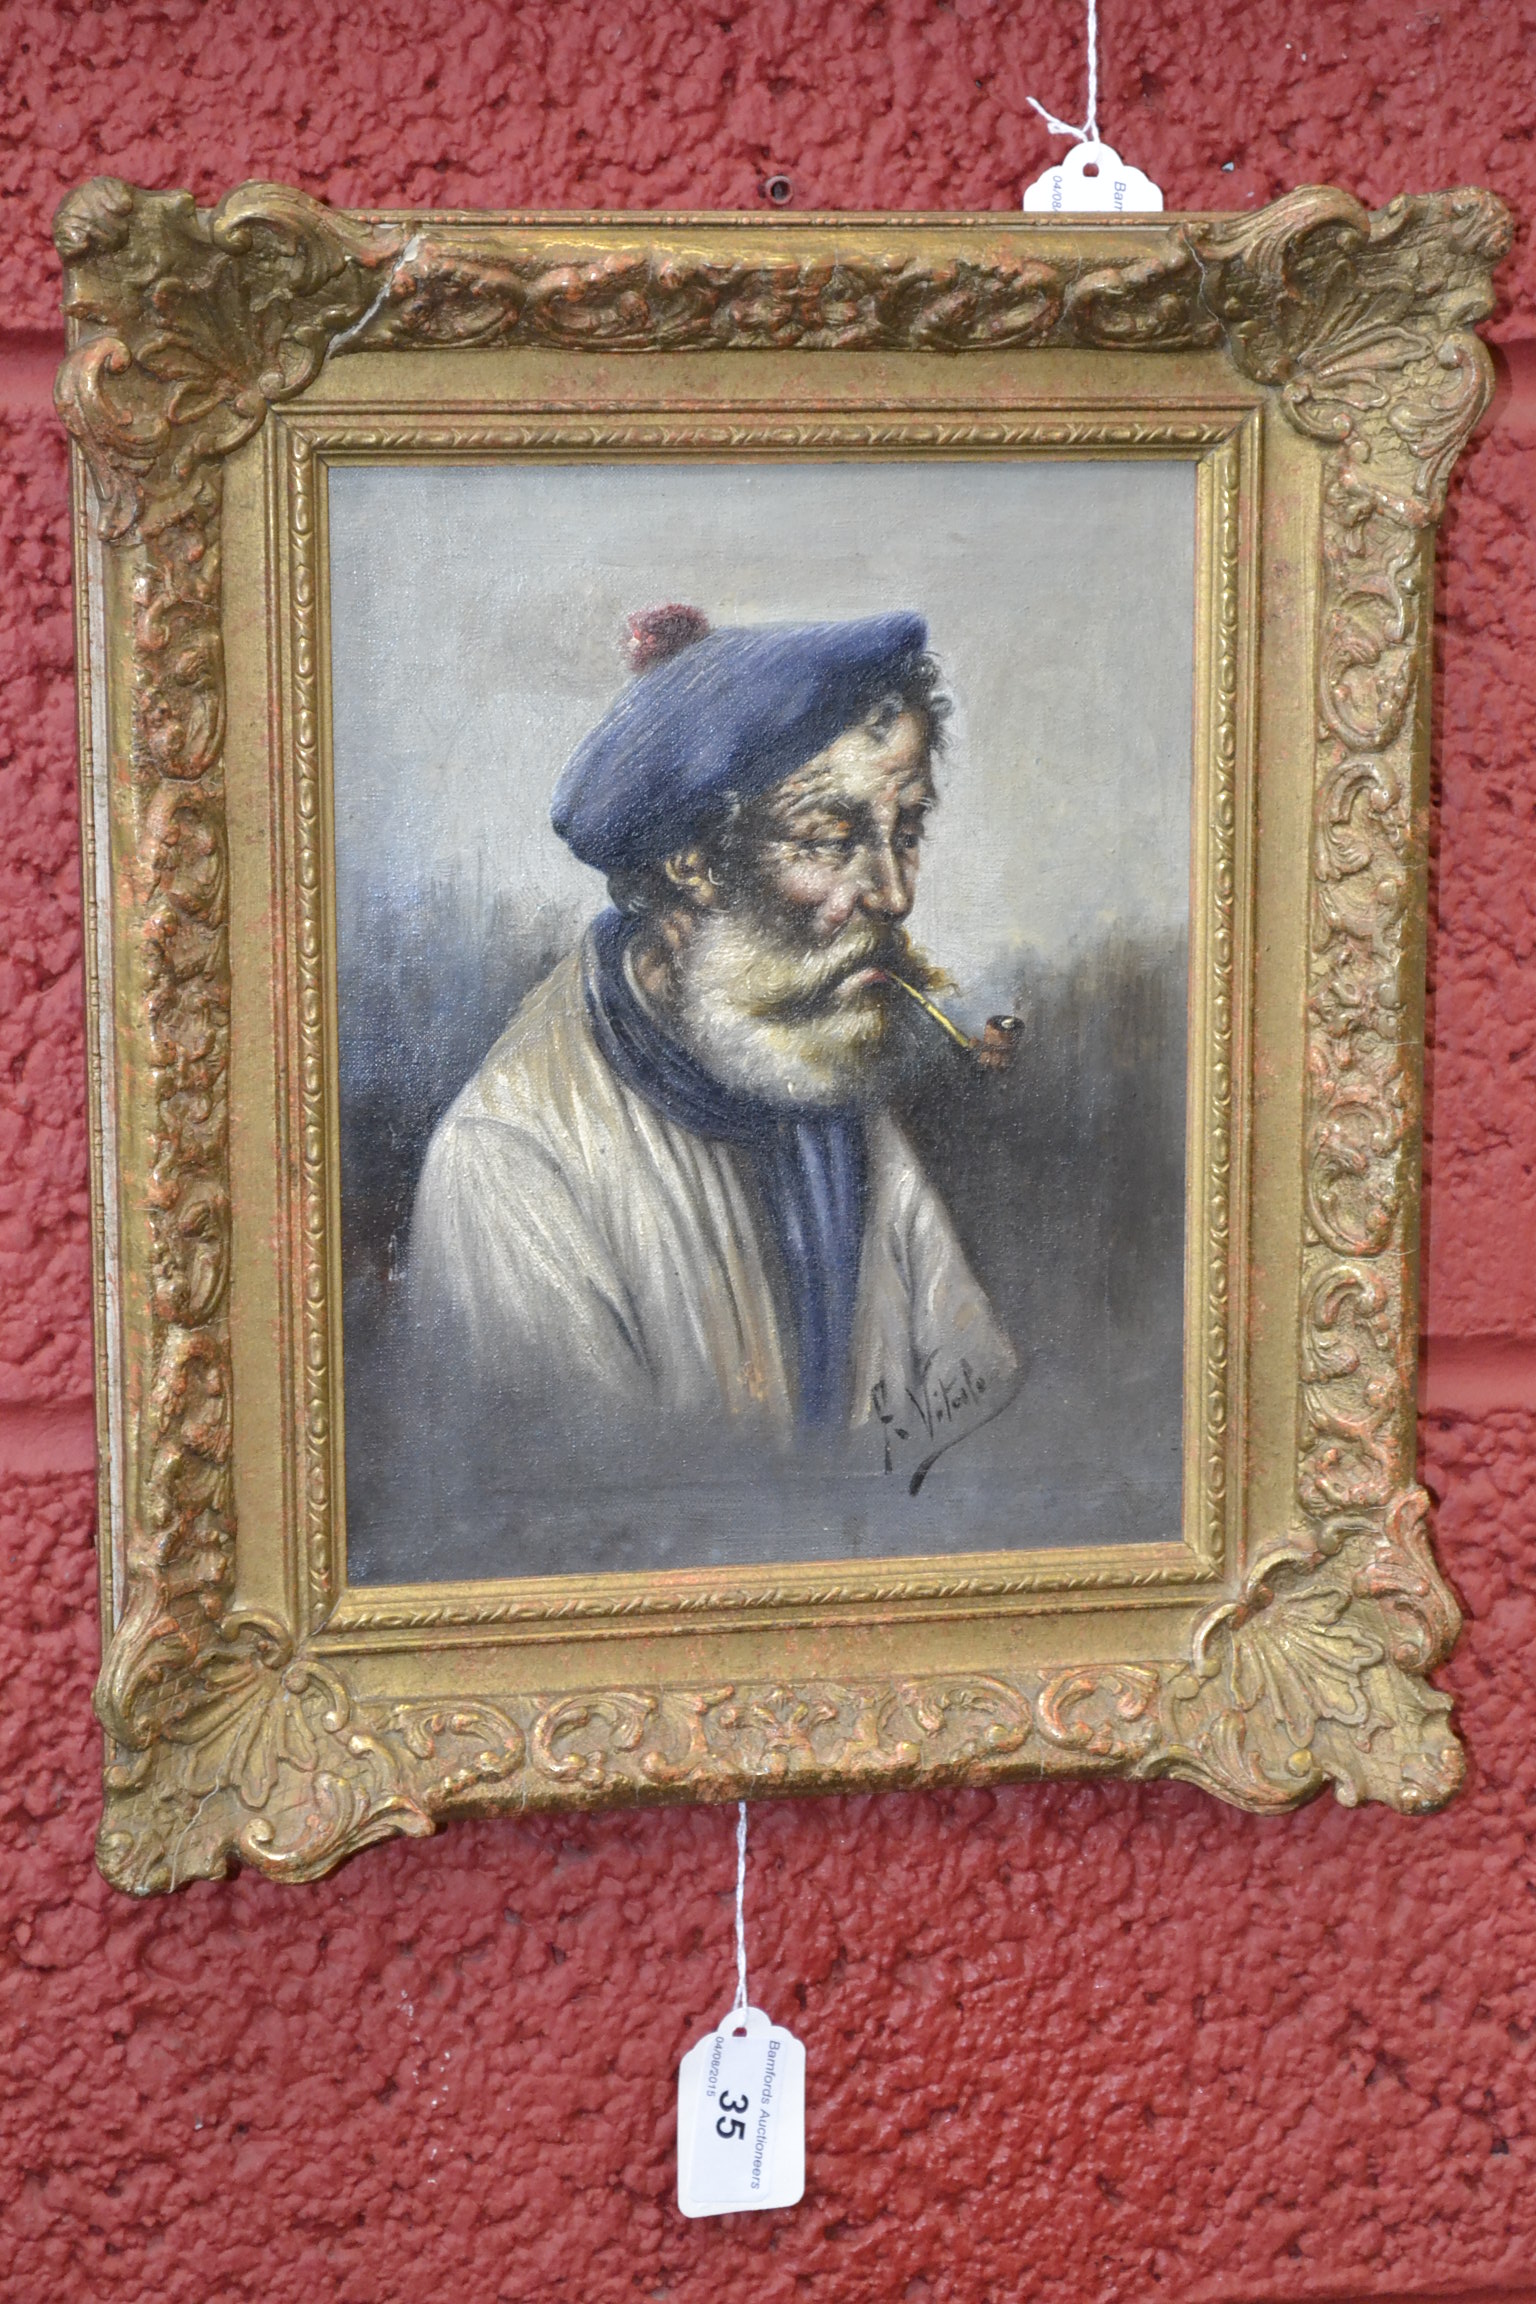 Ferruccio Vitale (1875-1933) 
The Somnolent Smoker,
signed, oil on canvas,